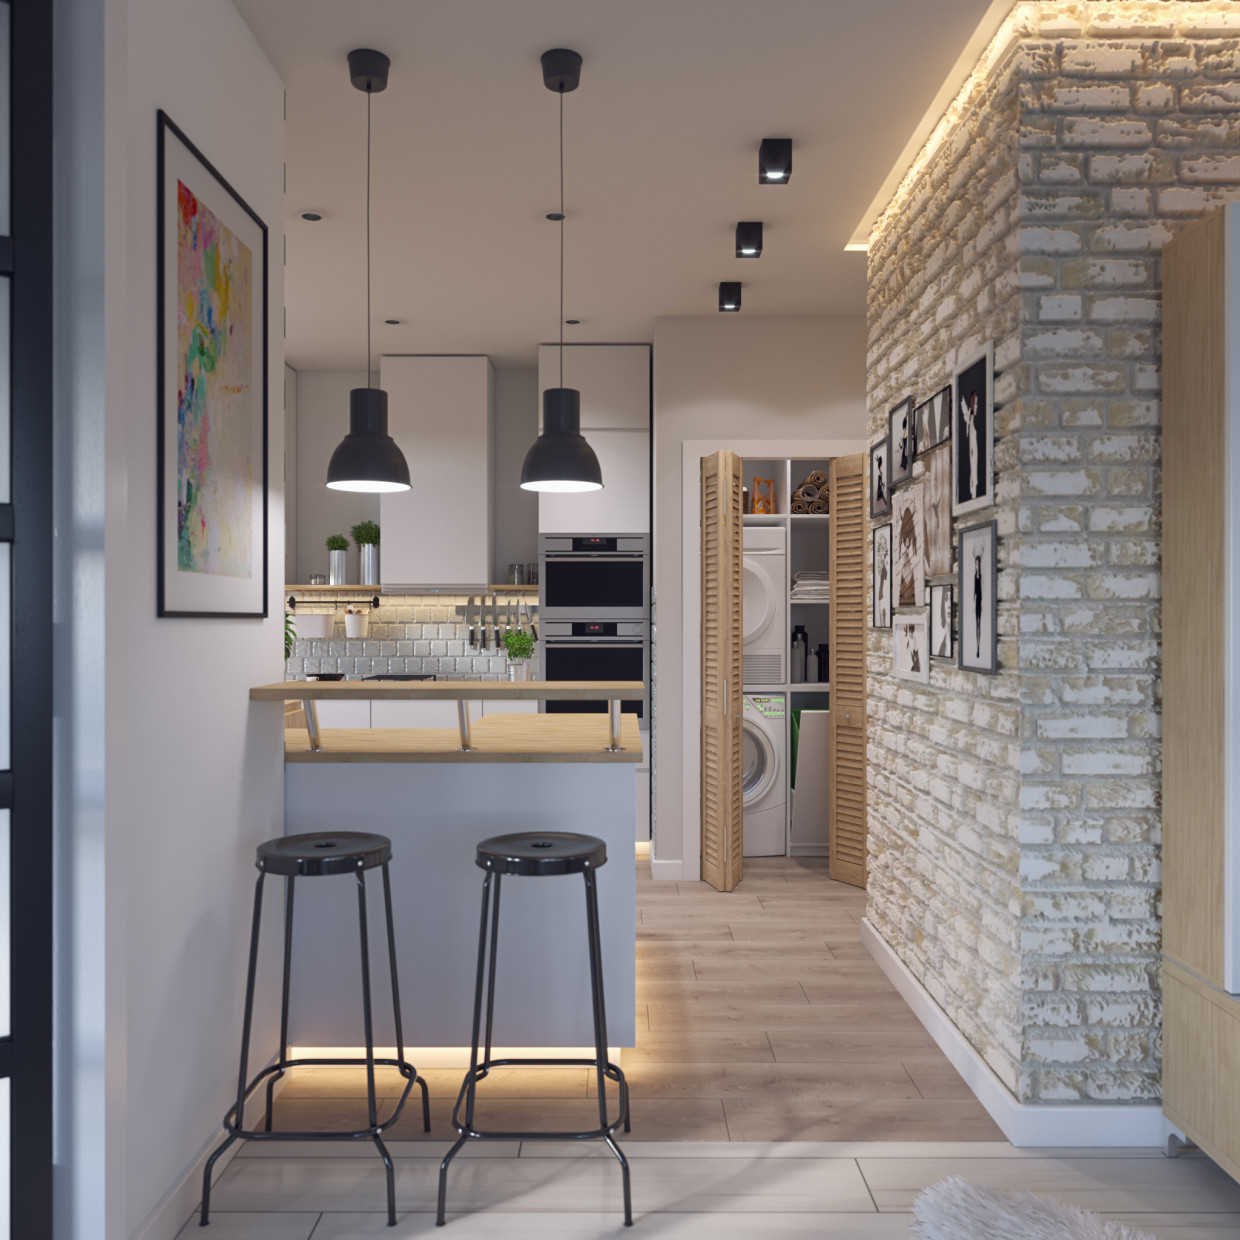 Visualizzare la cucina-Studio con mobili IKEA in 3d max corona render immagine